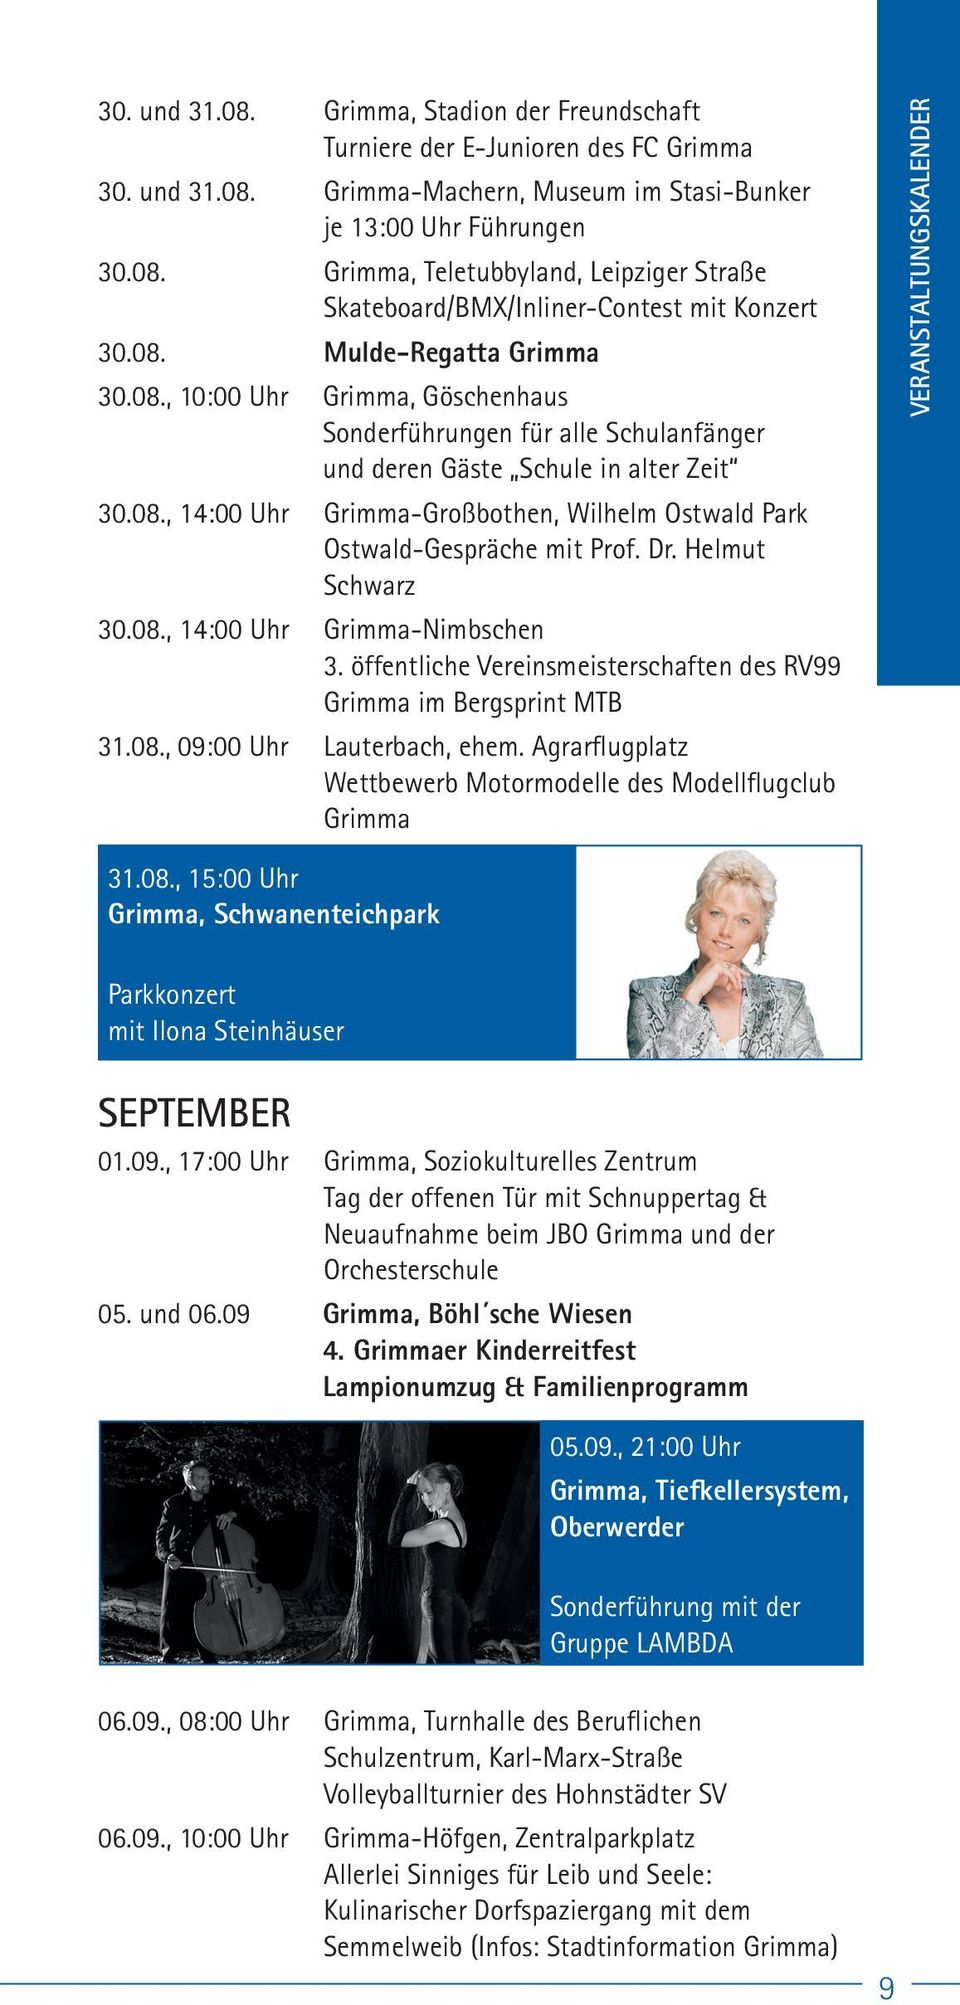 Dr. Helmut Schwarz 30.08., 14:00 Uhr Grimma-Nimbschen 3. öffentliche Vereinsmeisterschaften des RV99 Grimma im Bergsprint MTB 31.08., 09:00 Uhr Lauterbach, ehem.